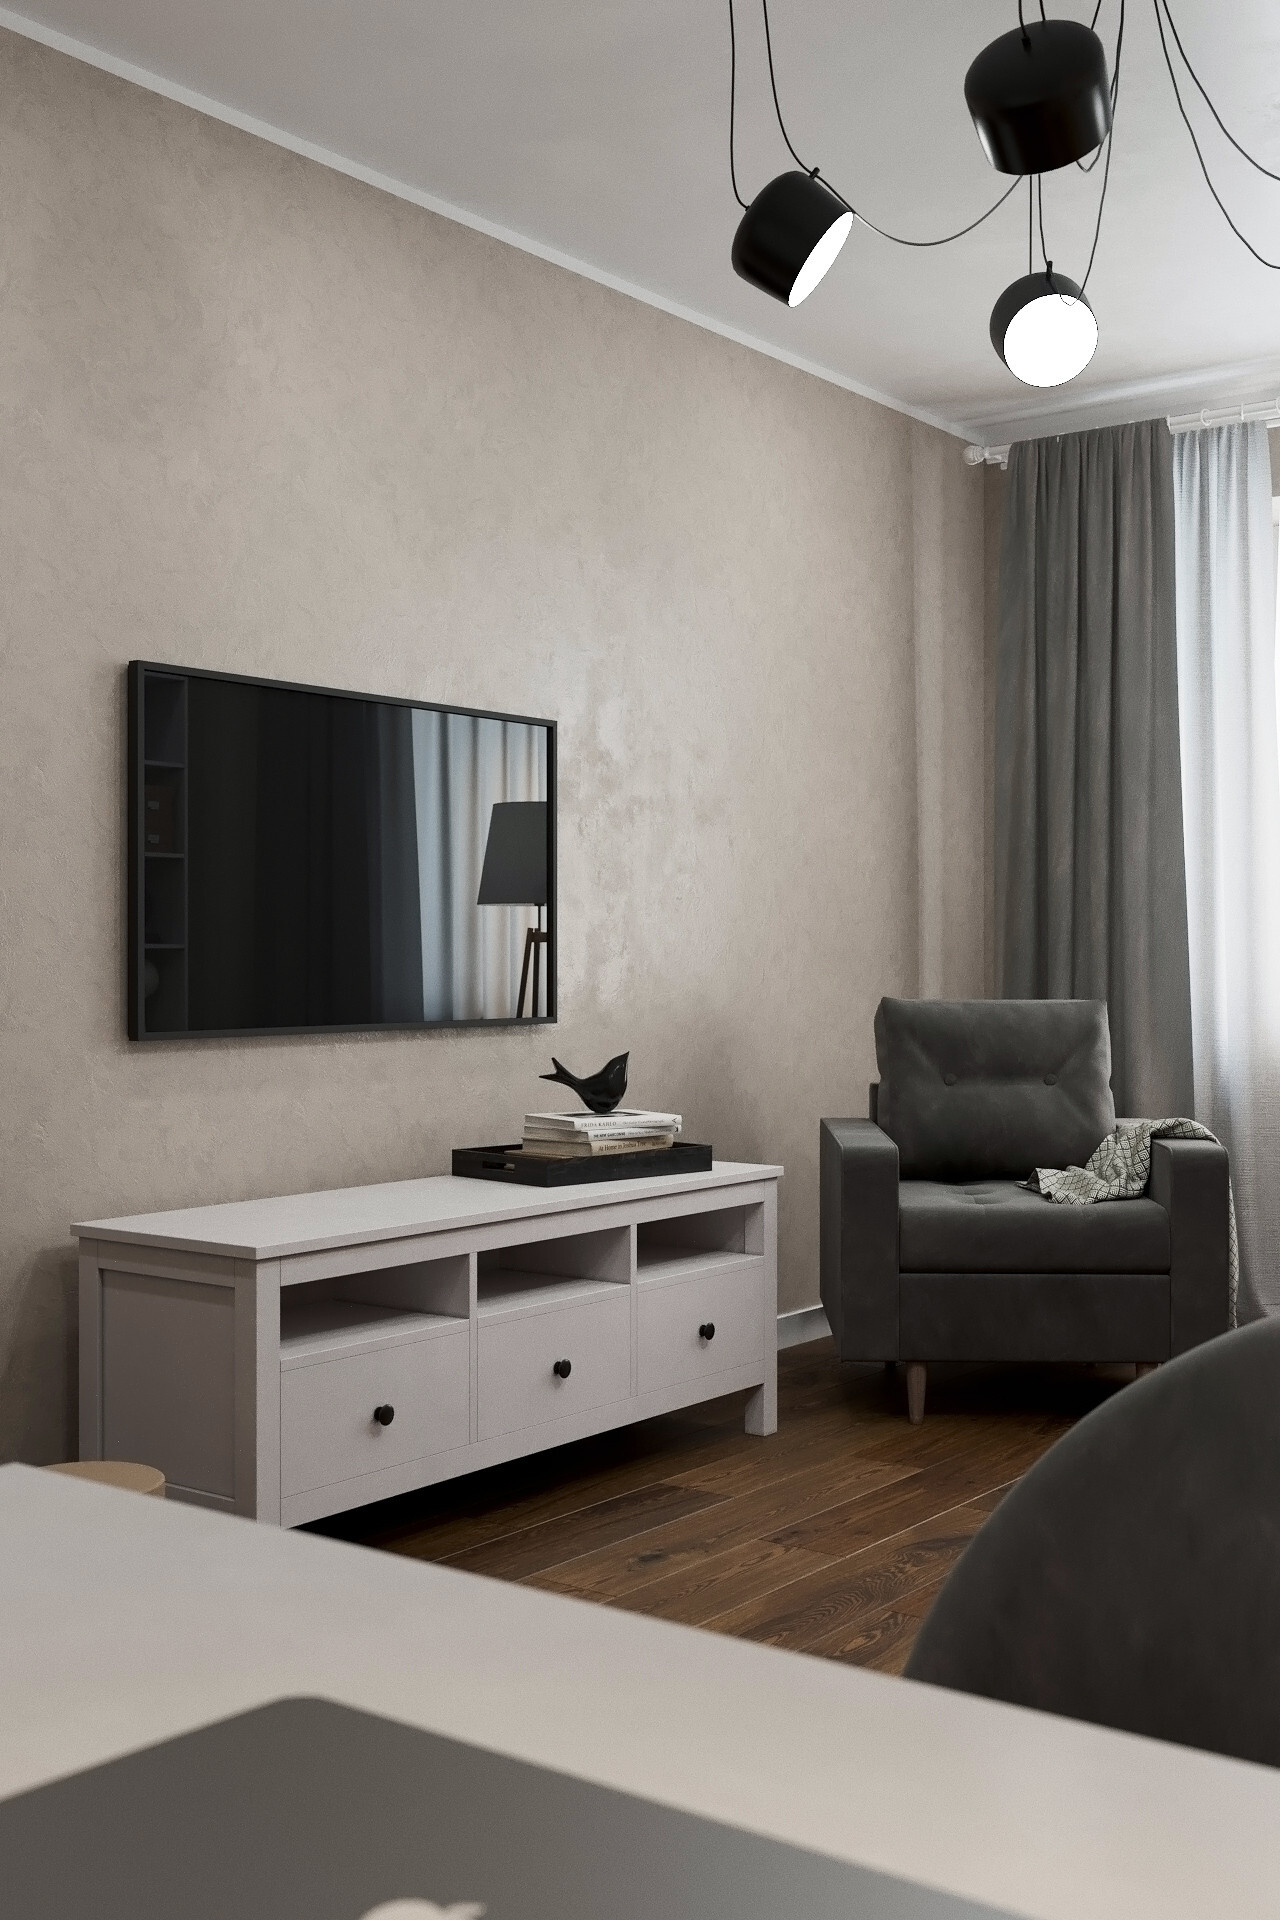 Интерьер гостиной cветовыми линиями, керамогранитом на стену с телевизором, подсветкой настенной и подсветкой светодиодной в скандинавском стиле